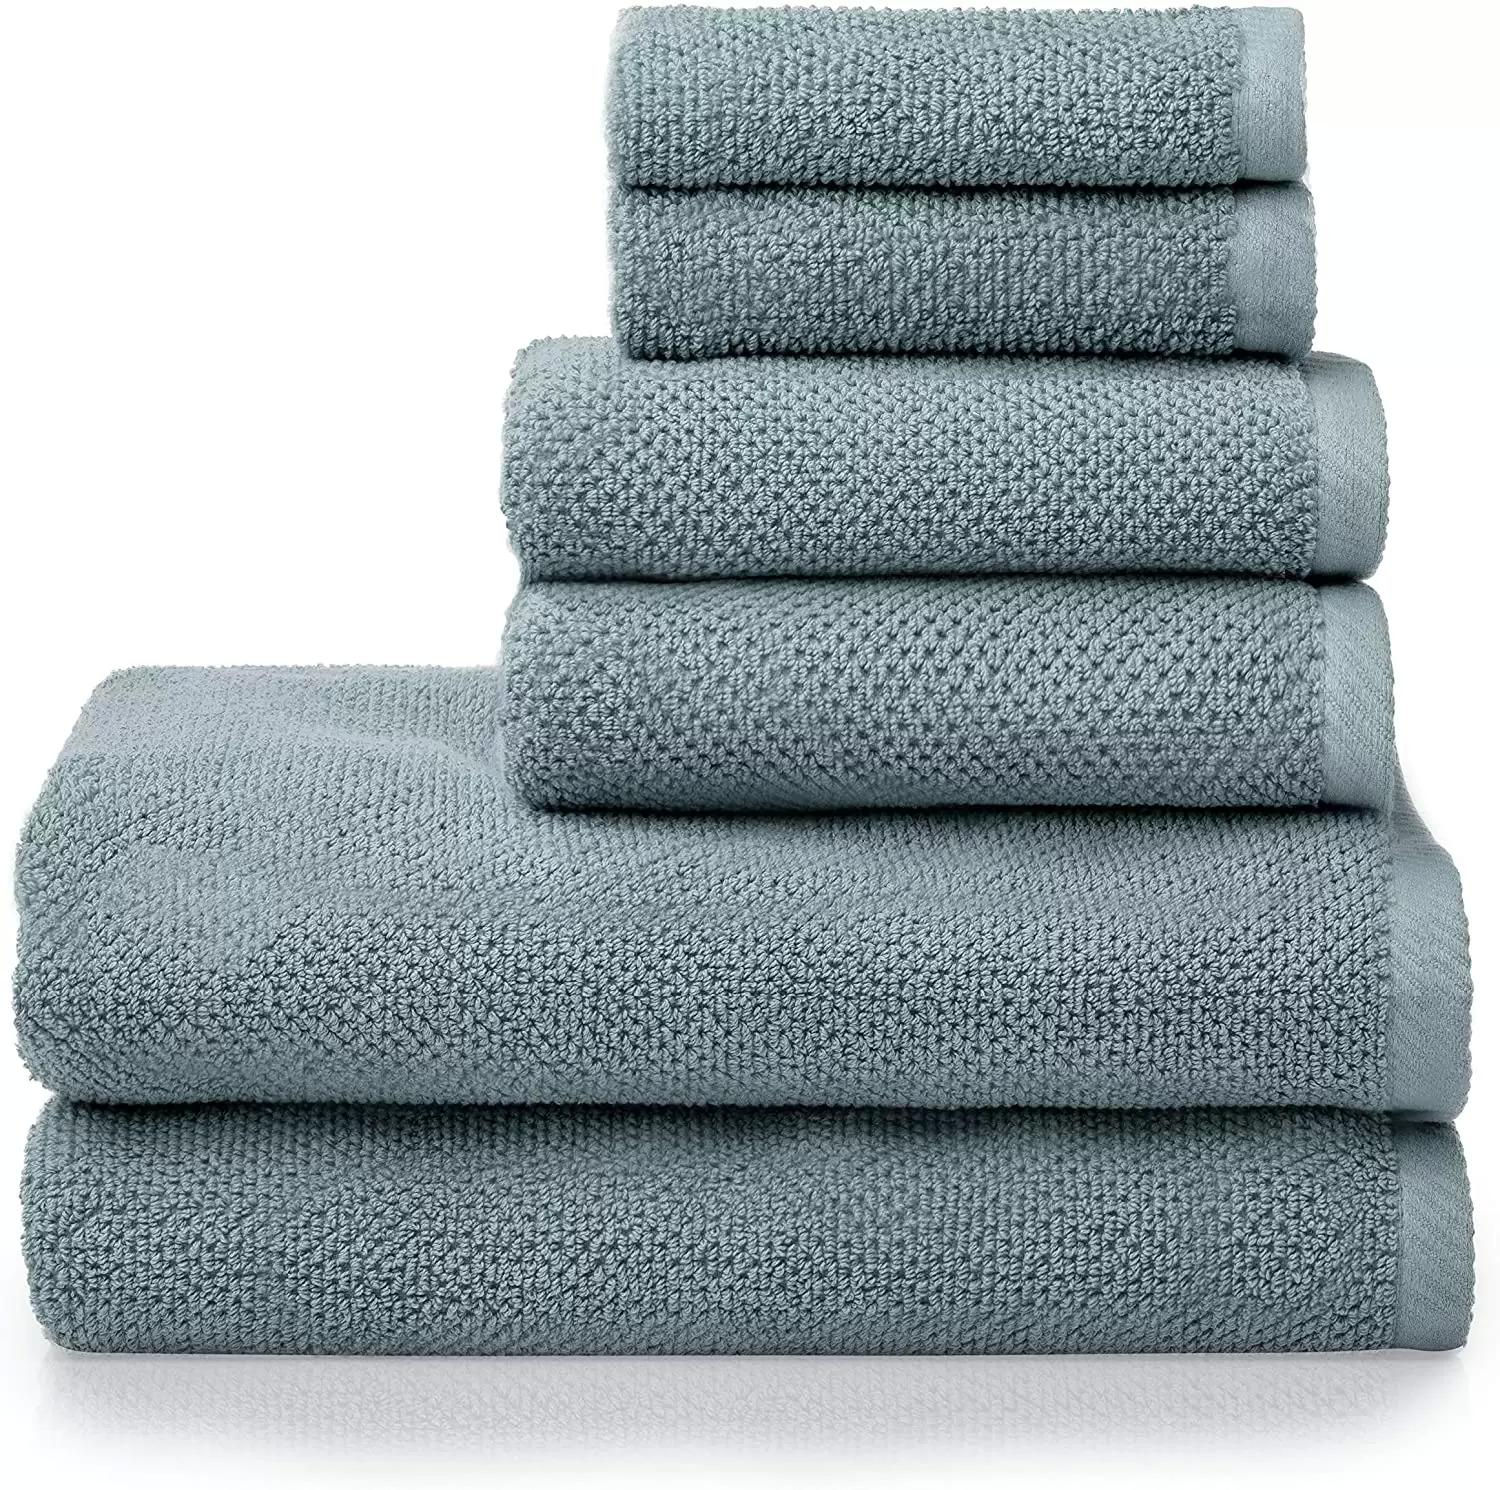 Welhome Franklin Premium 6-Piece Towel Set for $29.99 Shipped